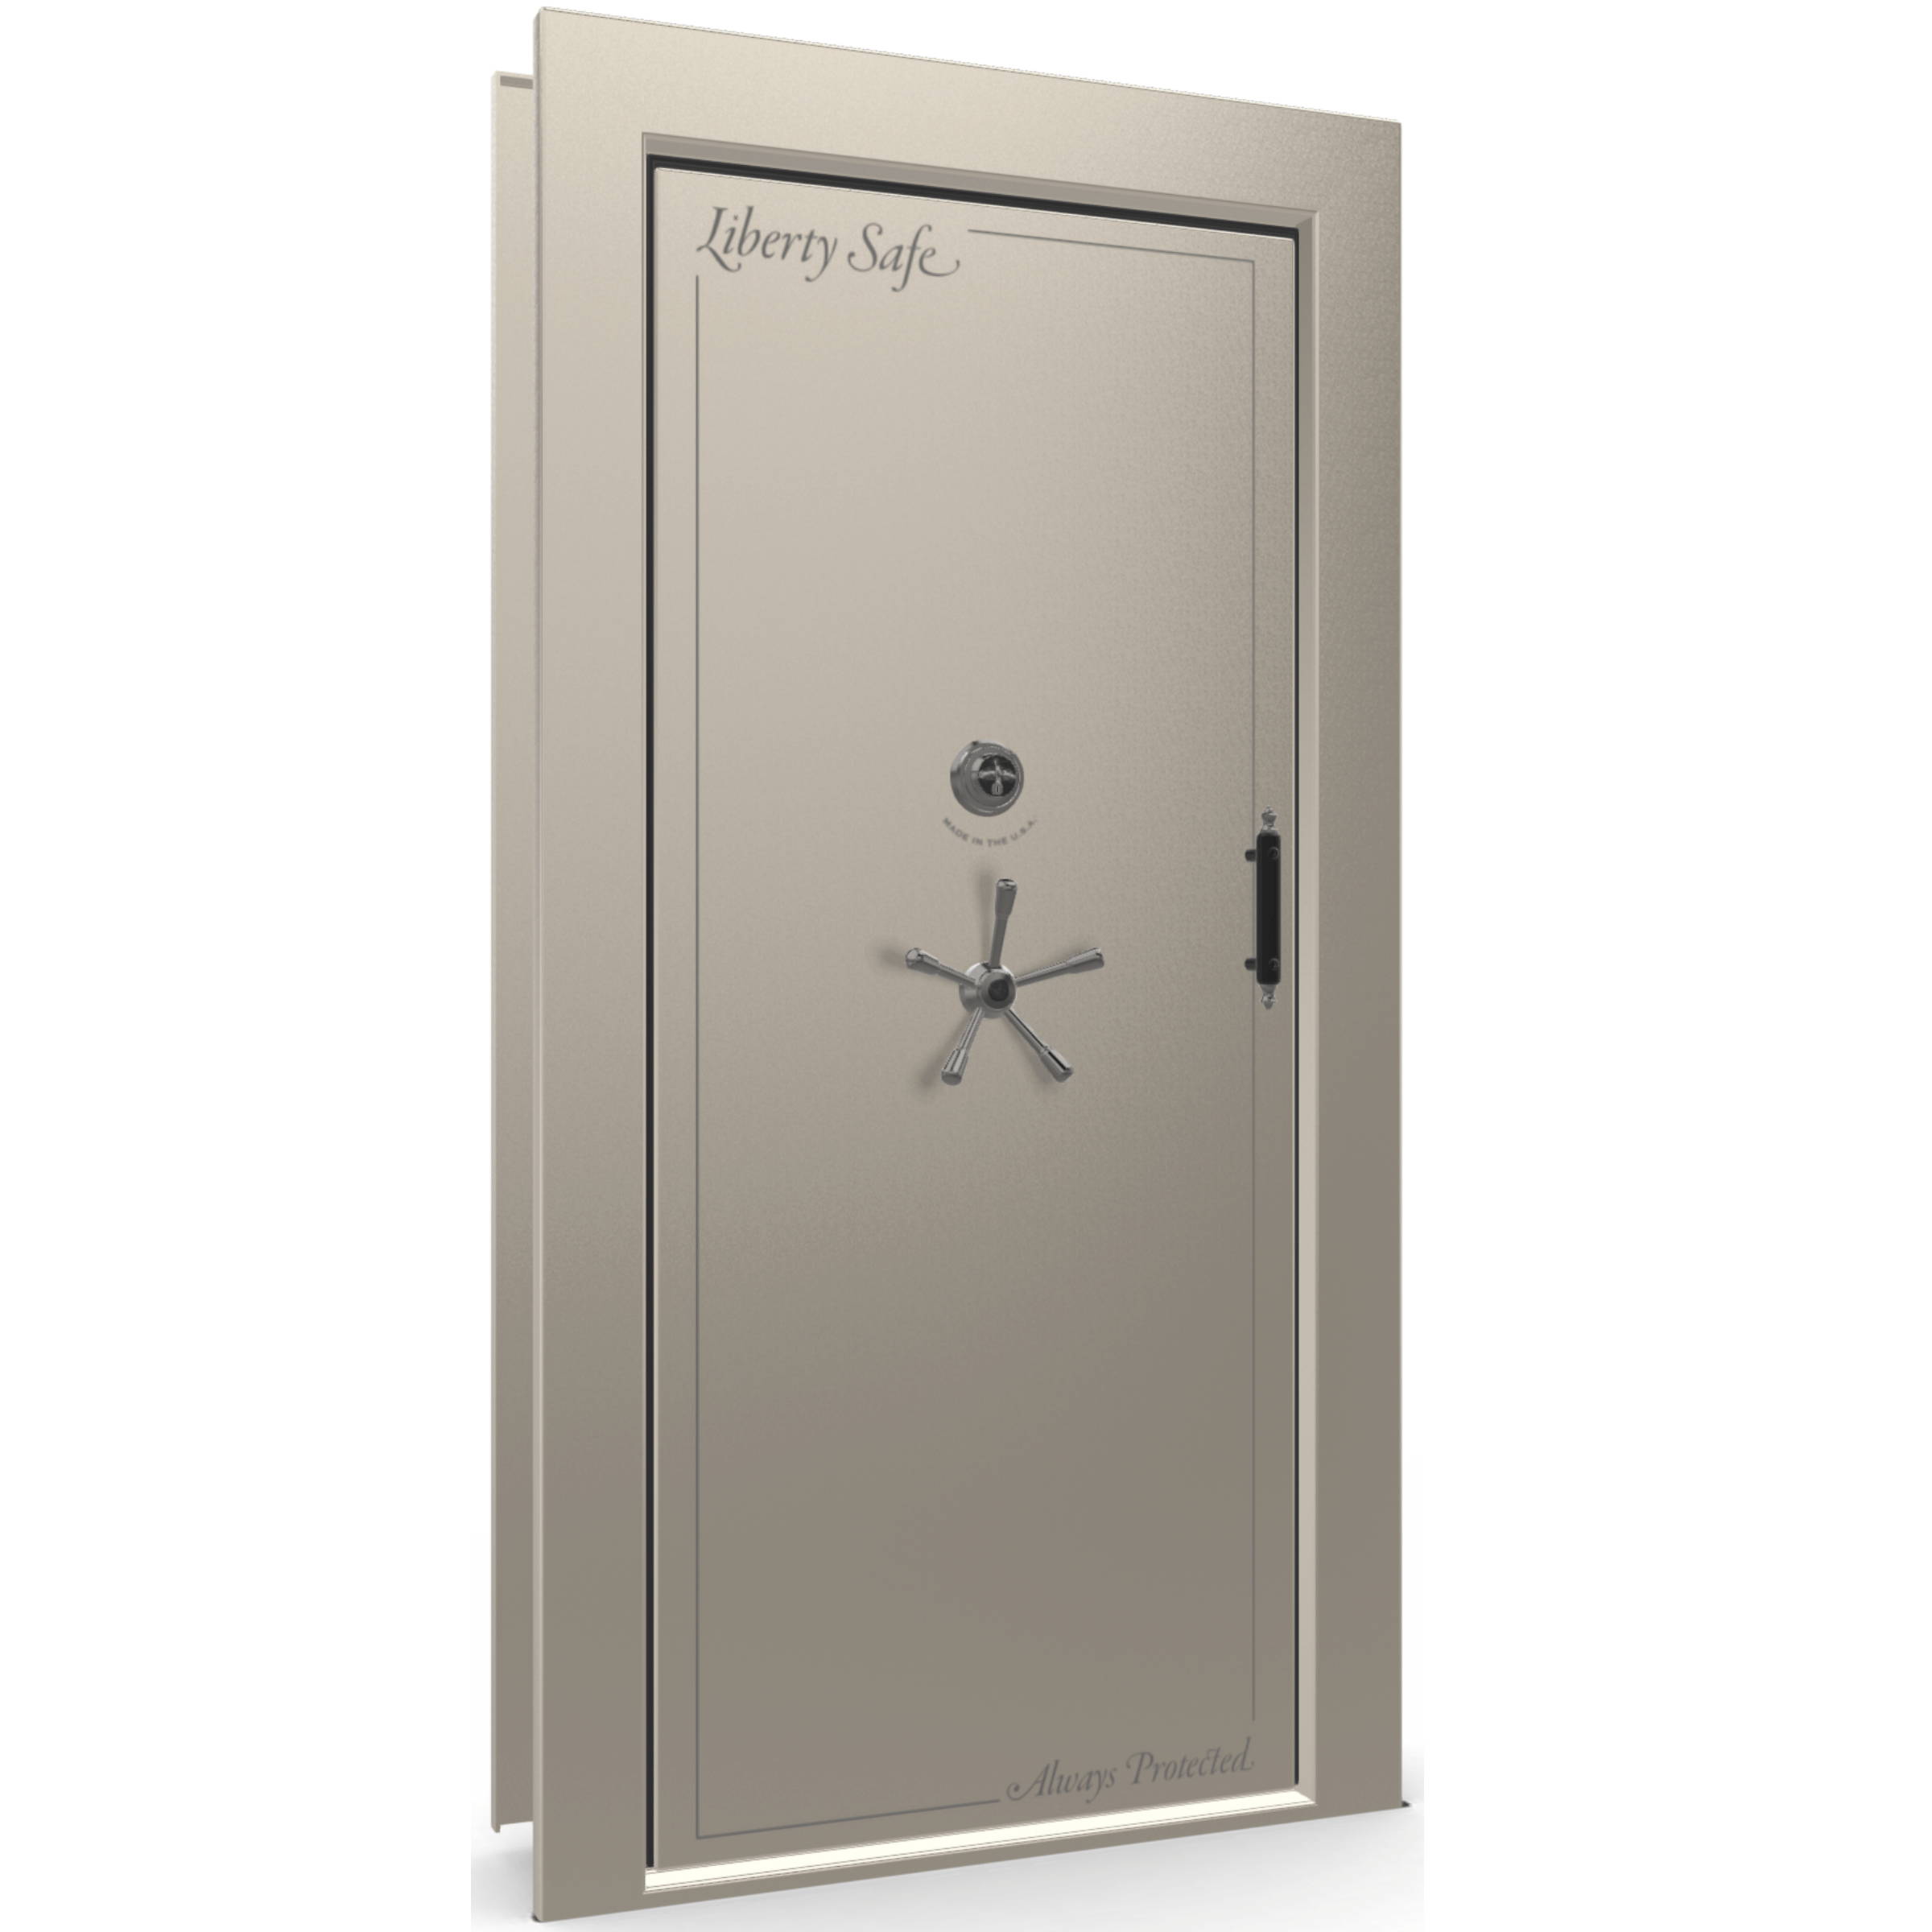 Liberty Safe vault door in-swing left hand